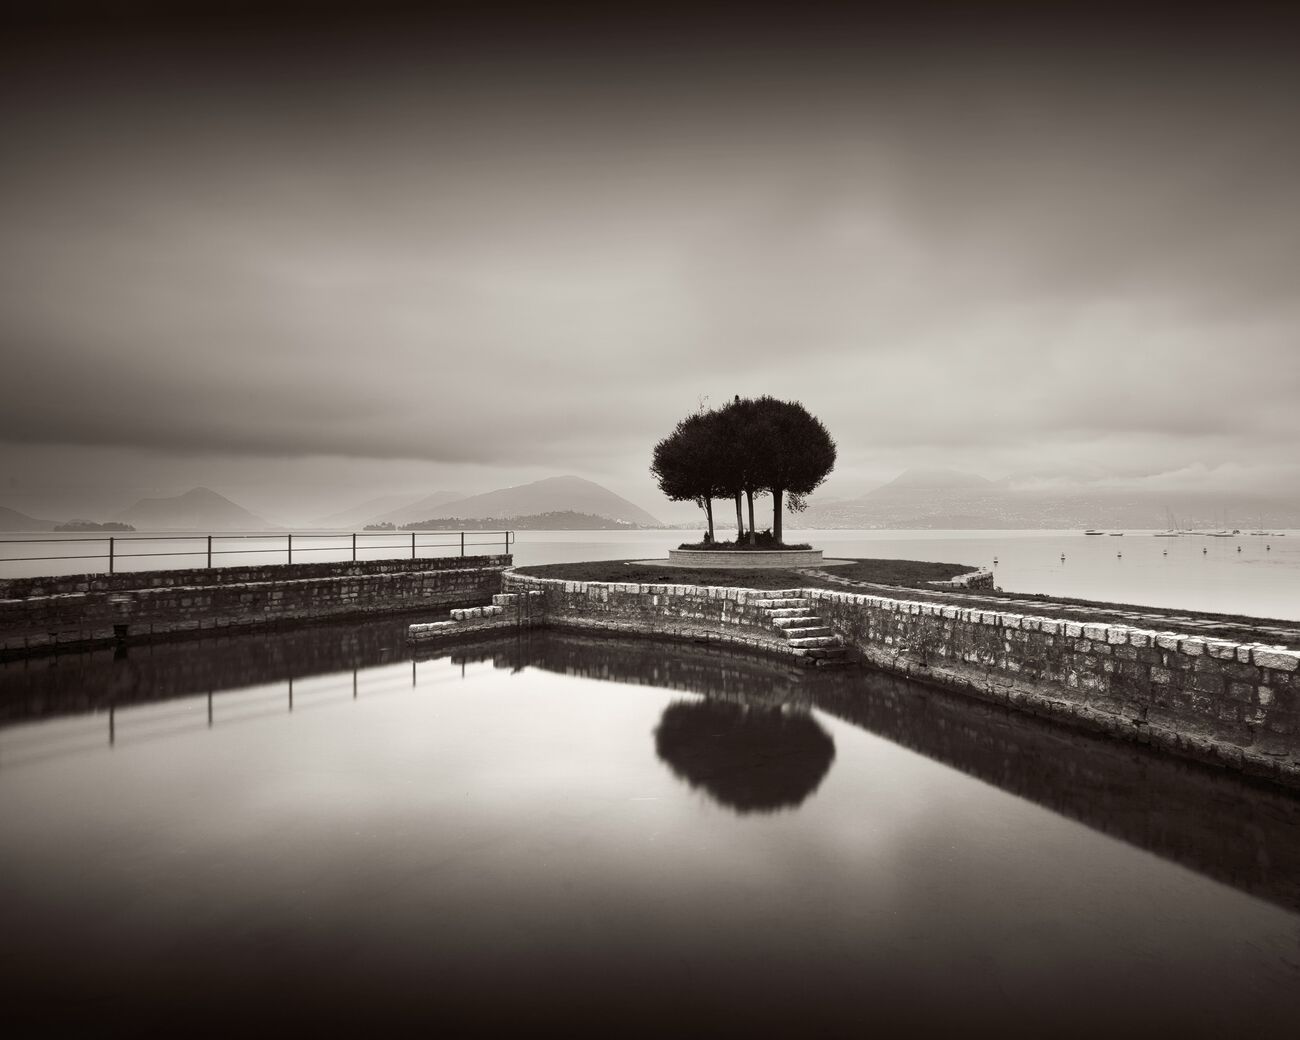 Achat d'une photographie 23 x 18.4 cm, Trees on pier, etude 2. Ref-11608-3 - Denis Olivier Photographie d'Art